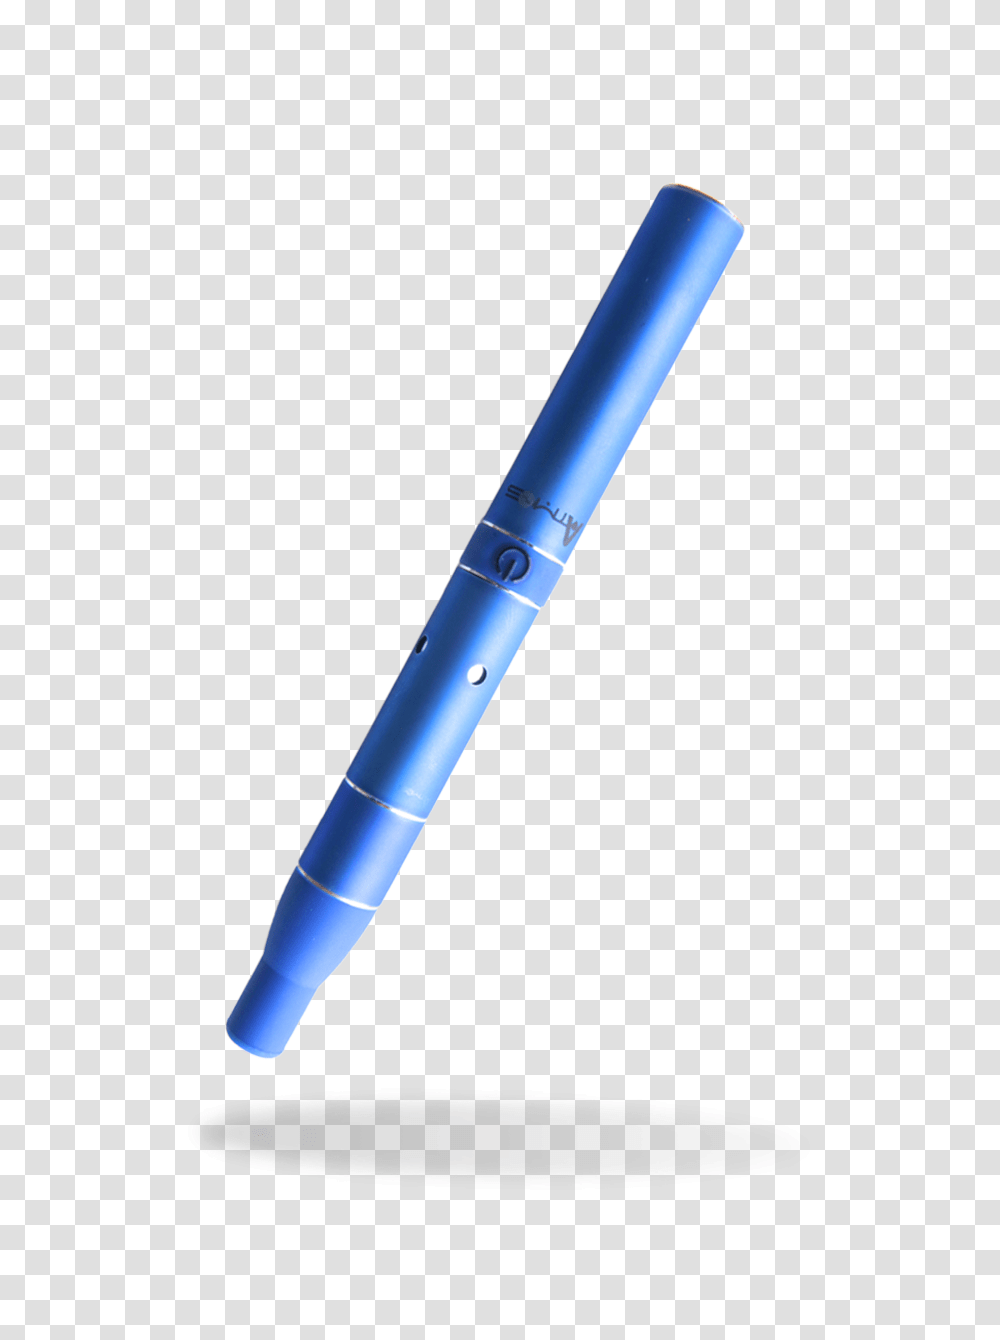 Atmos Rx Vaporizer Review, Pen, Fountain Pen Transparent Png